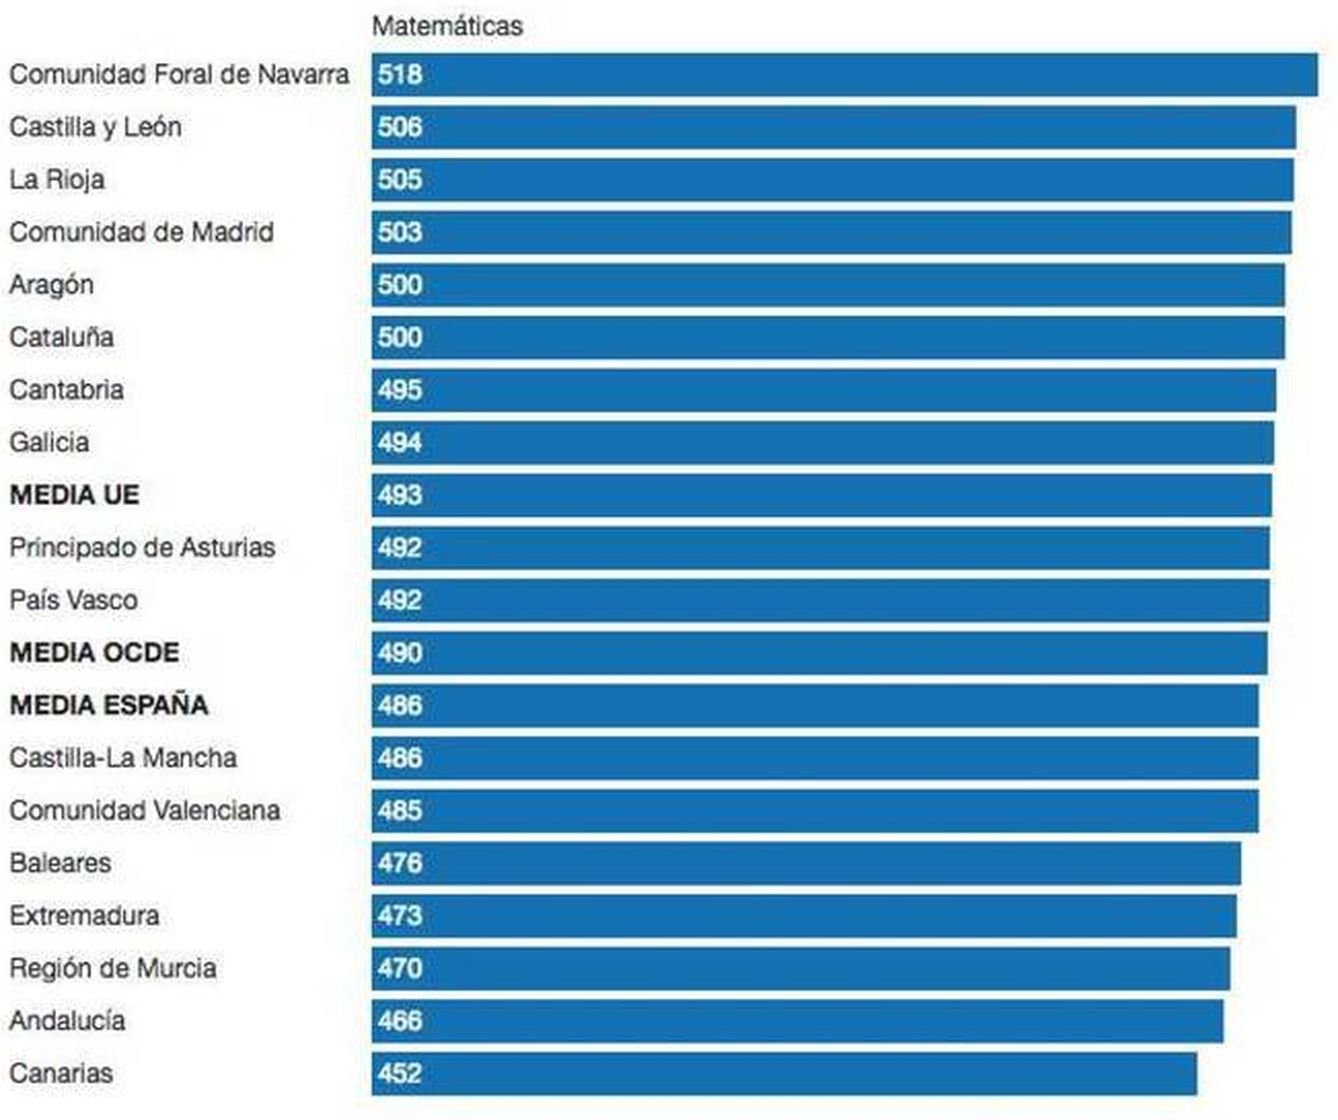 Ranking por CCAA en matemáticas según PISA